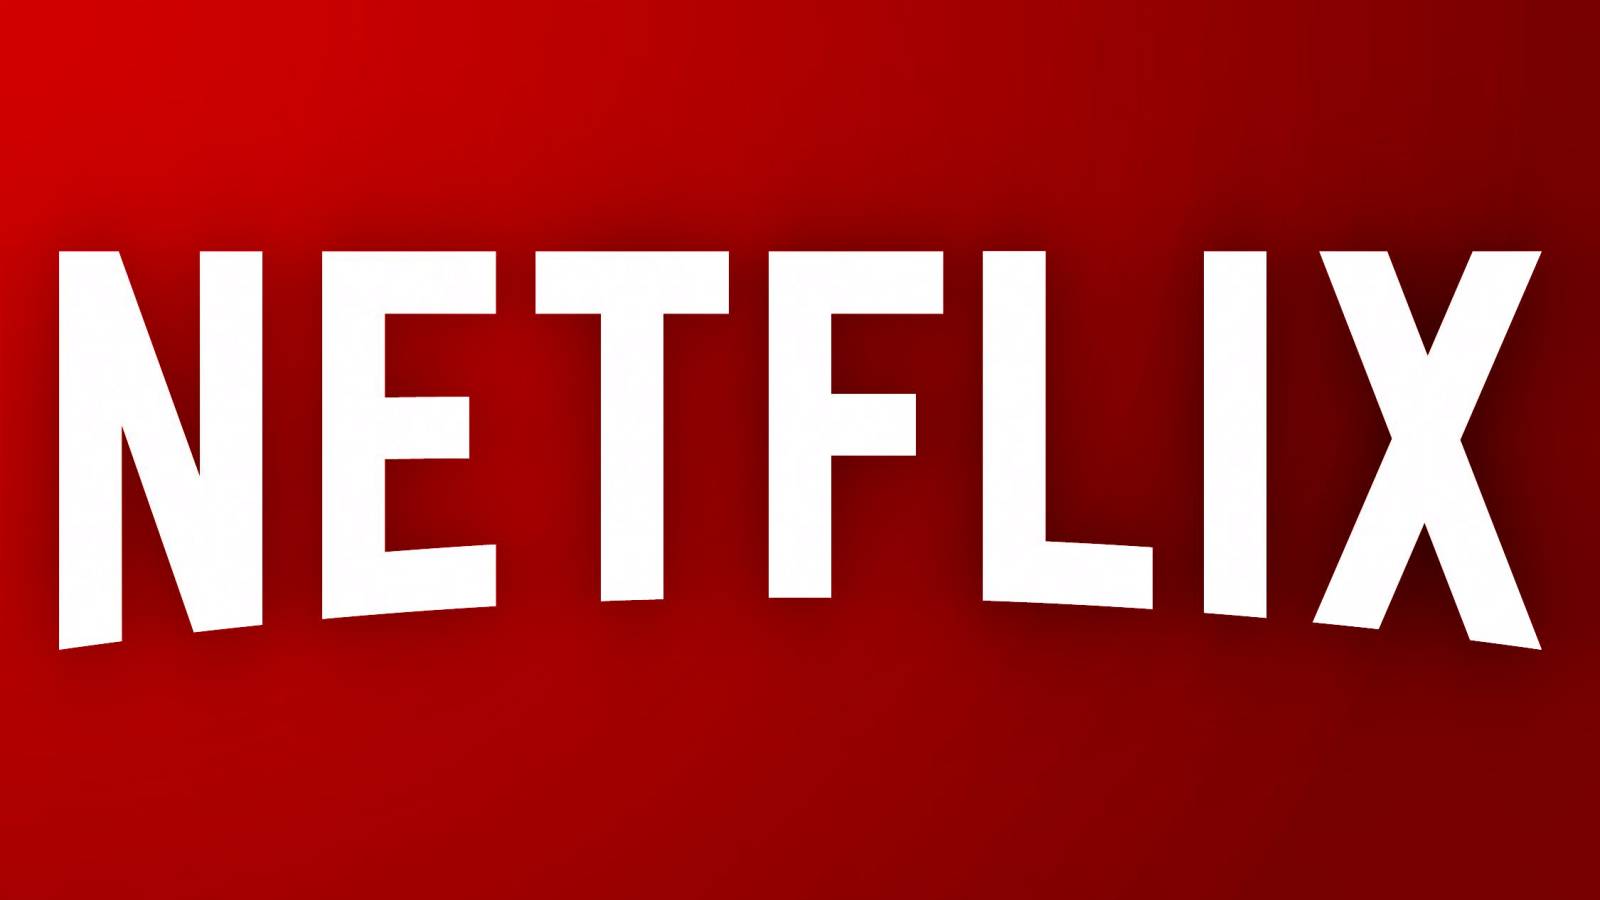 La déclaration de Netflix renforce la décision. Changements MAJEURS annoncés